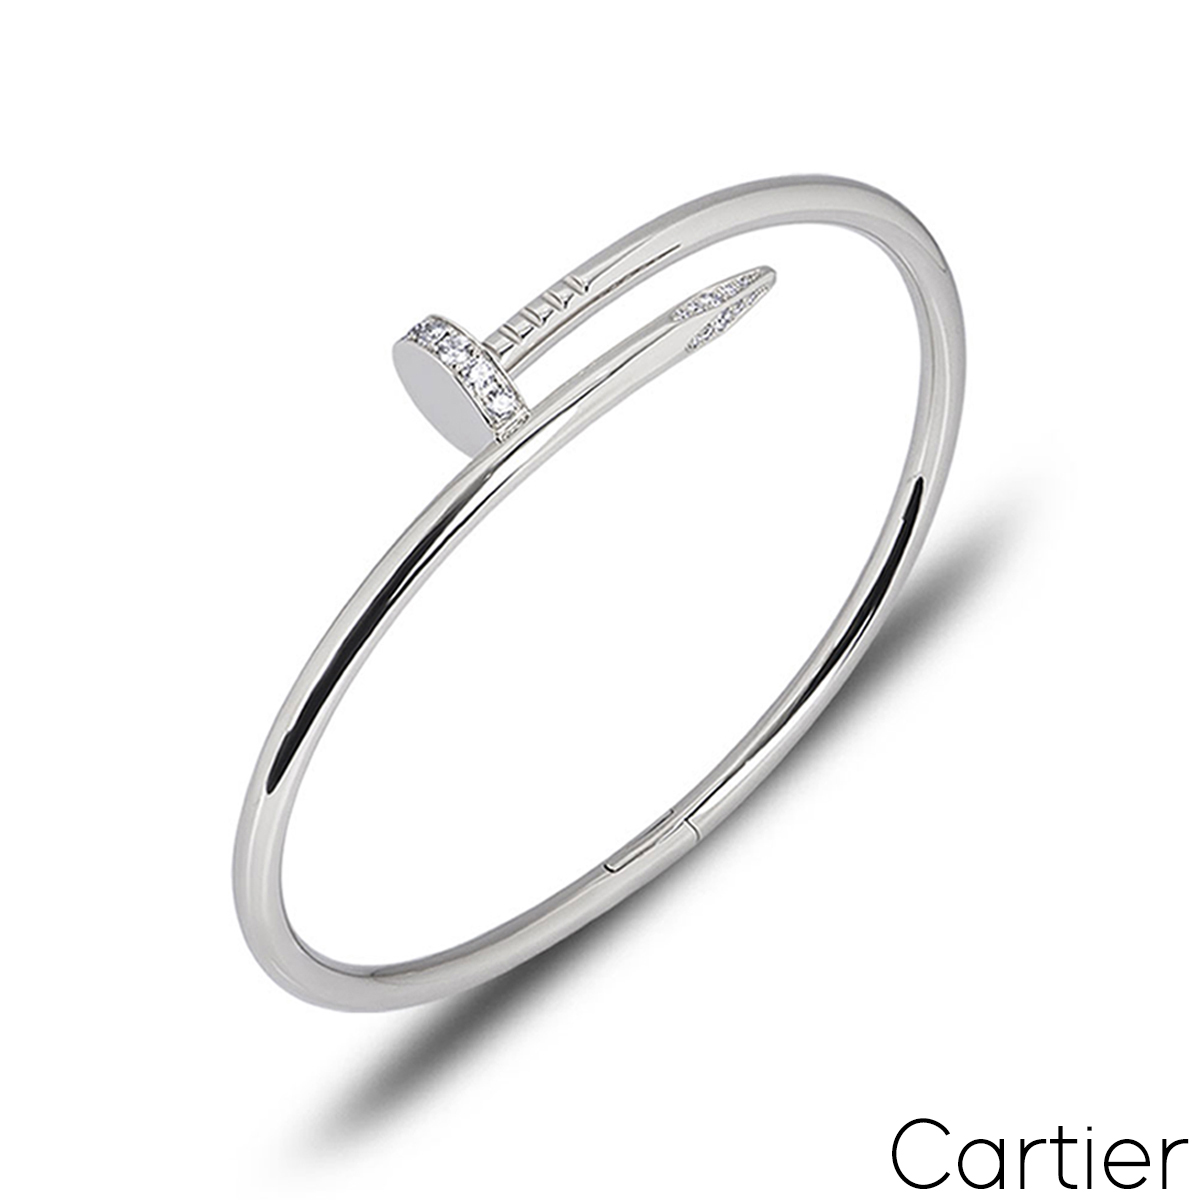 Carrier love bracelets and juste un clou | Cartier love bracelet diamond, Cartier  nail bracelet, Love bracelets